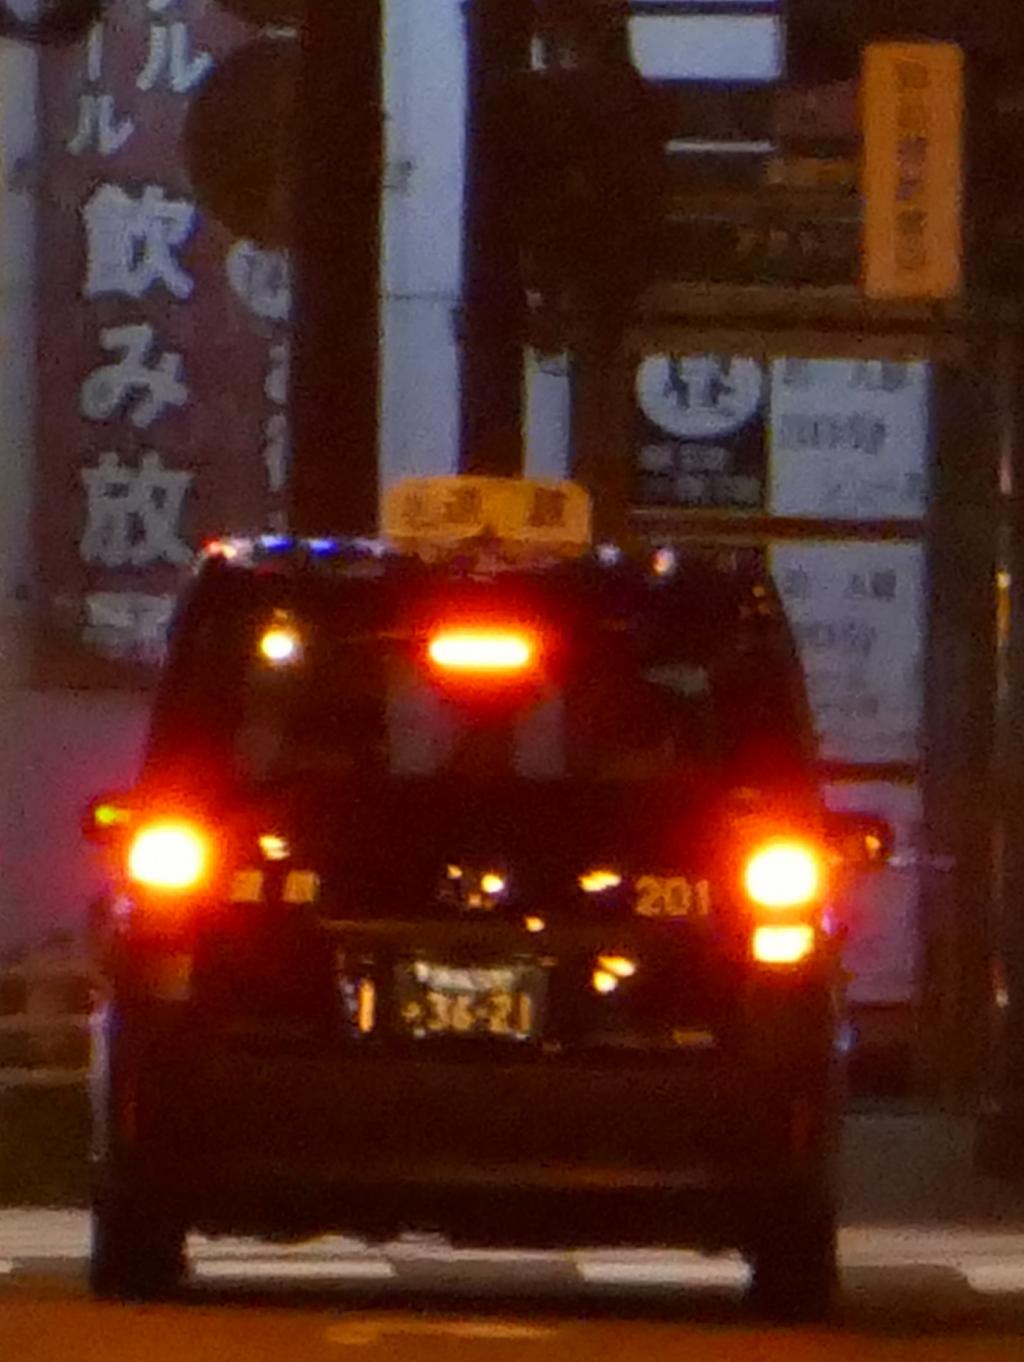 ジャパンタクシー